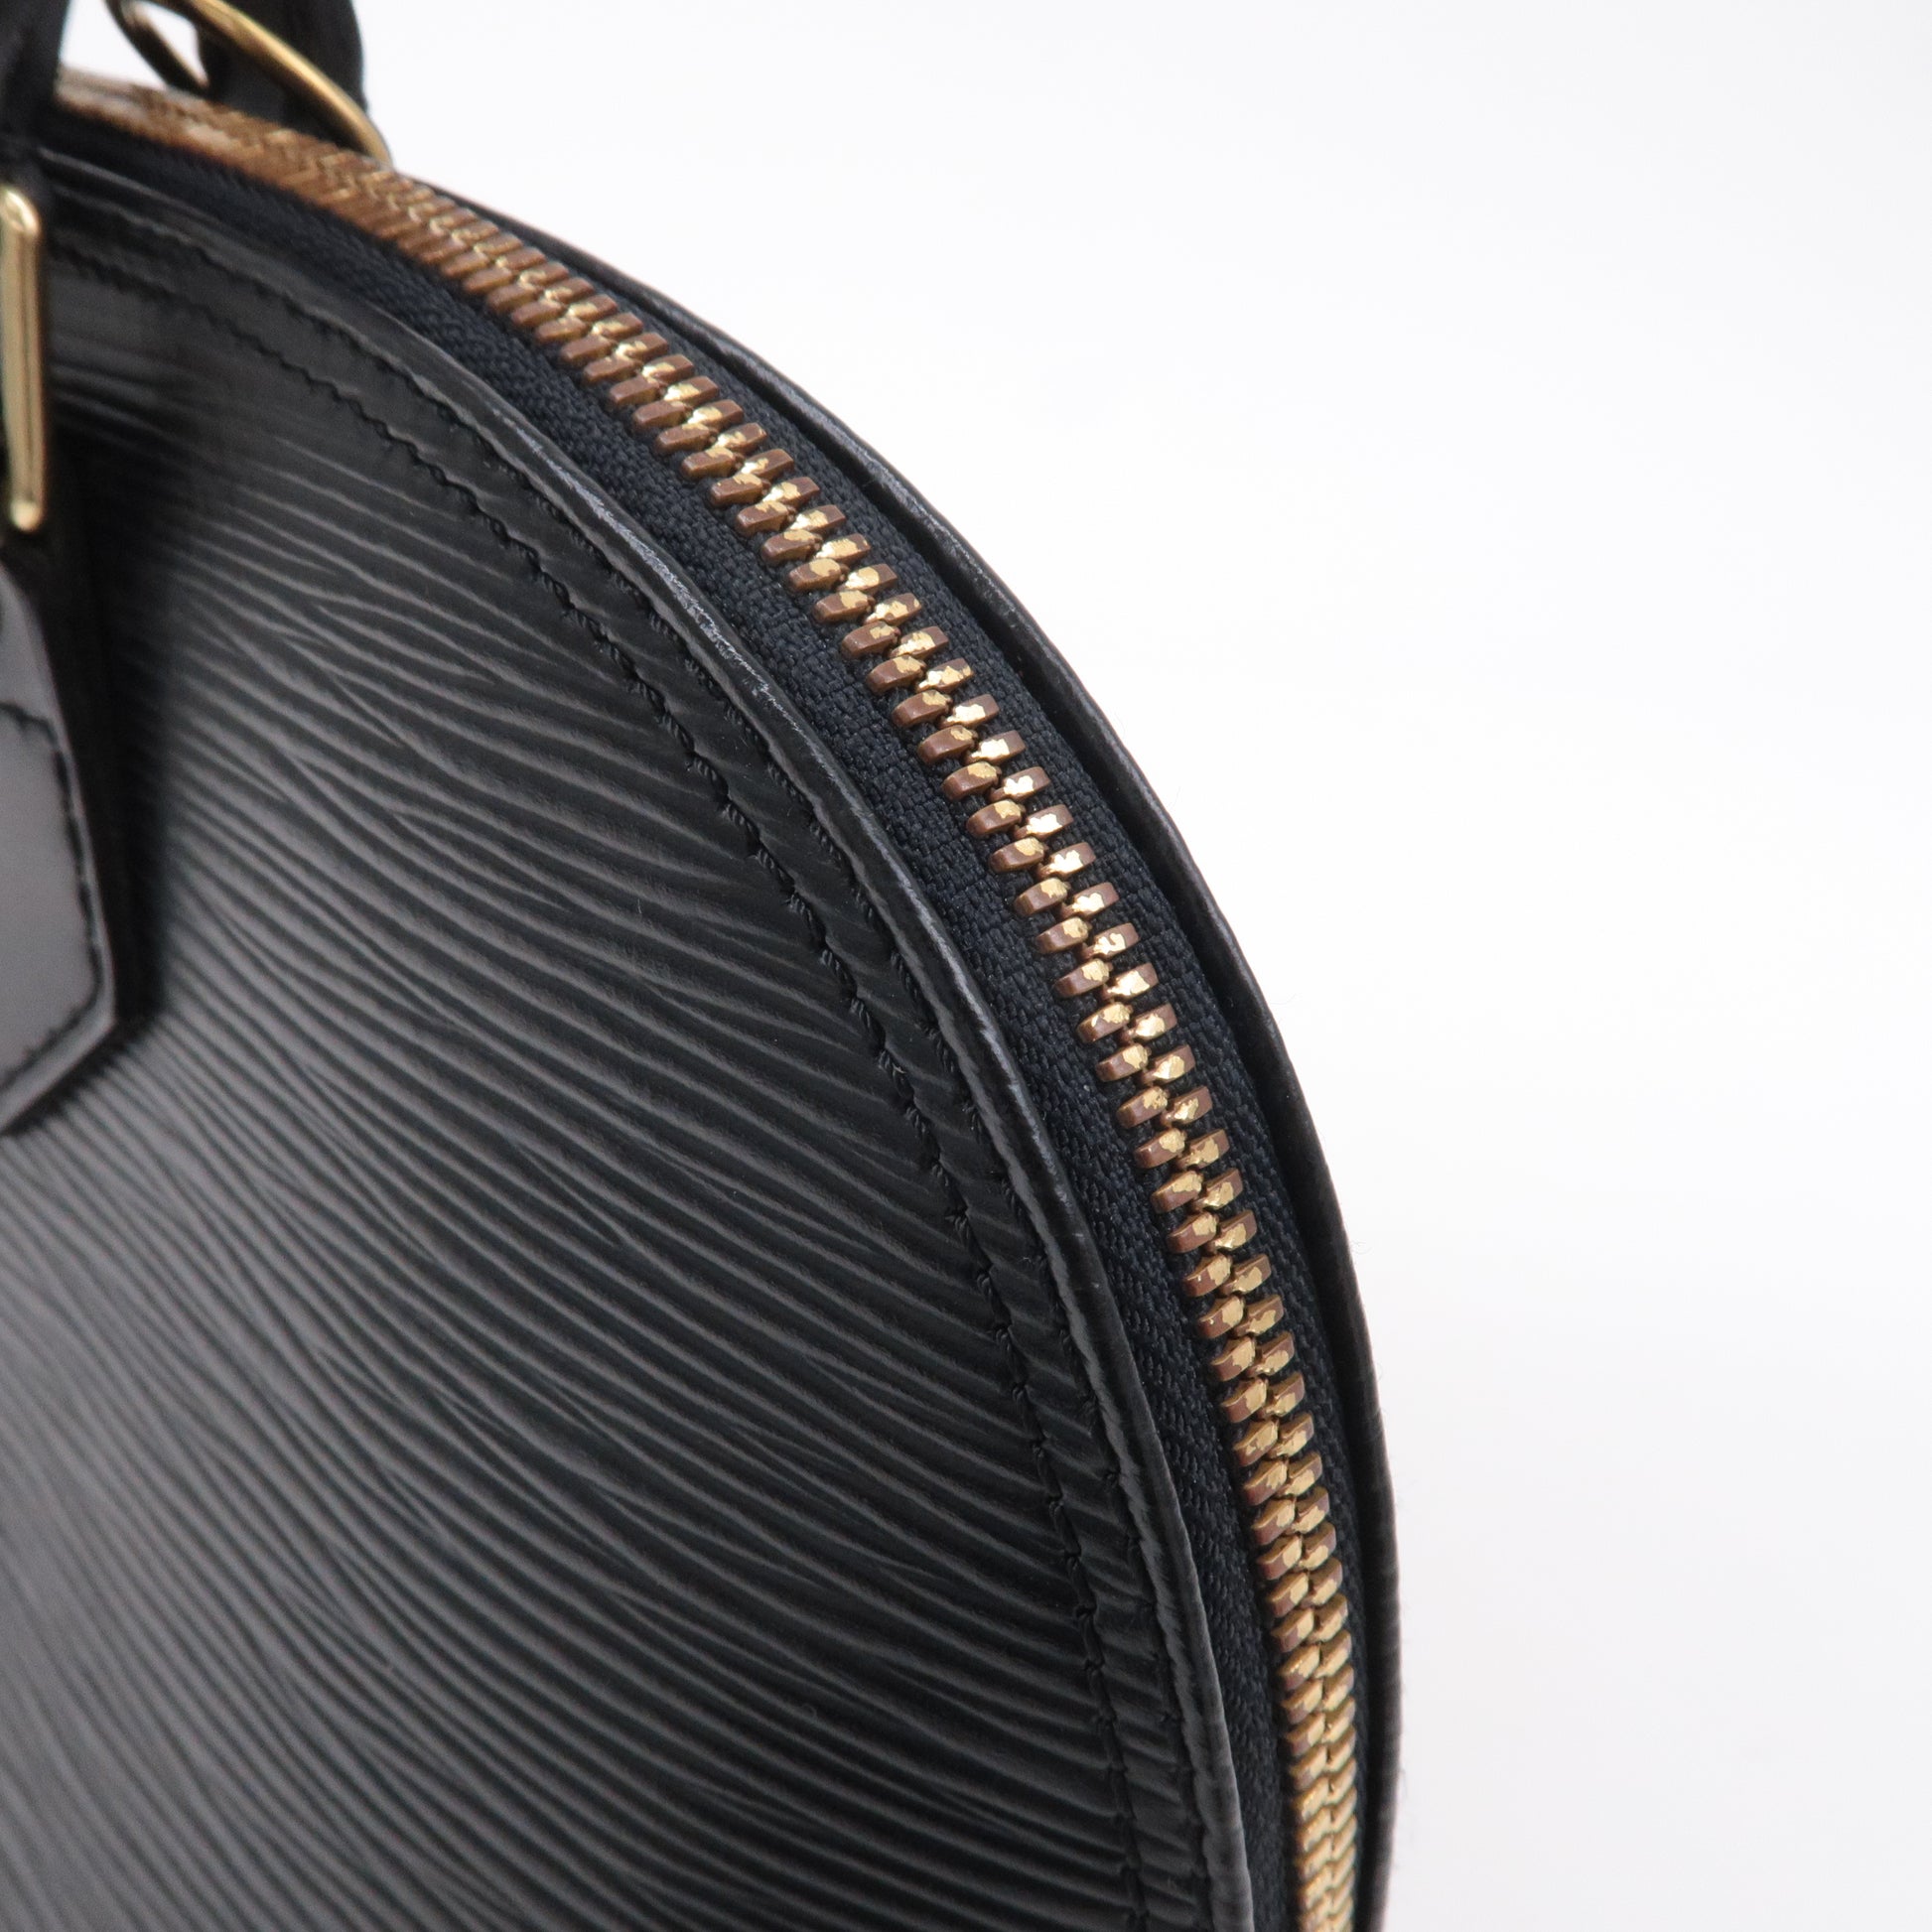 Louis-Vuitton Epi Alma Hand Bag